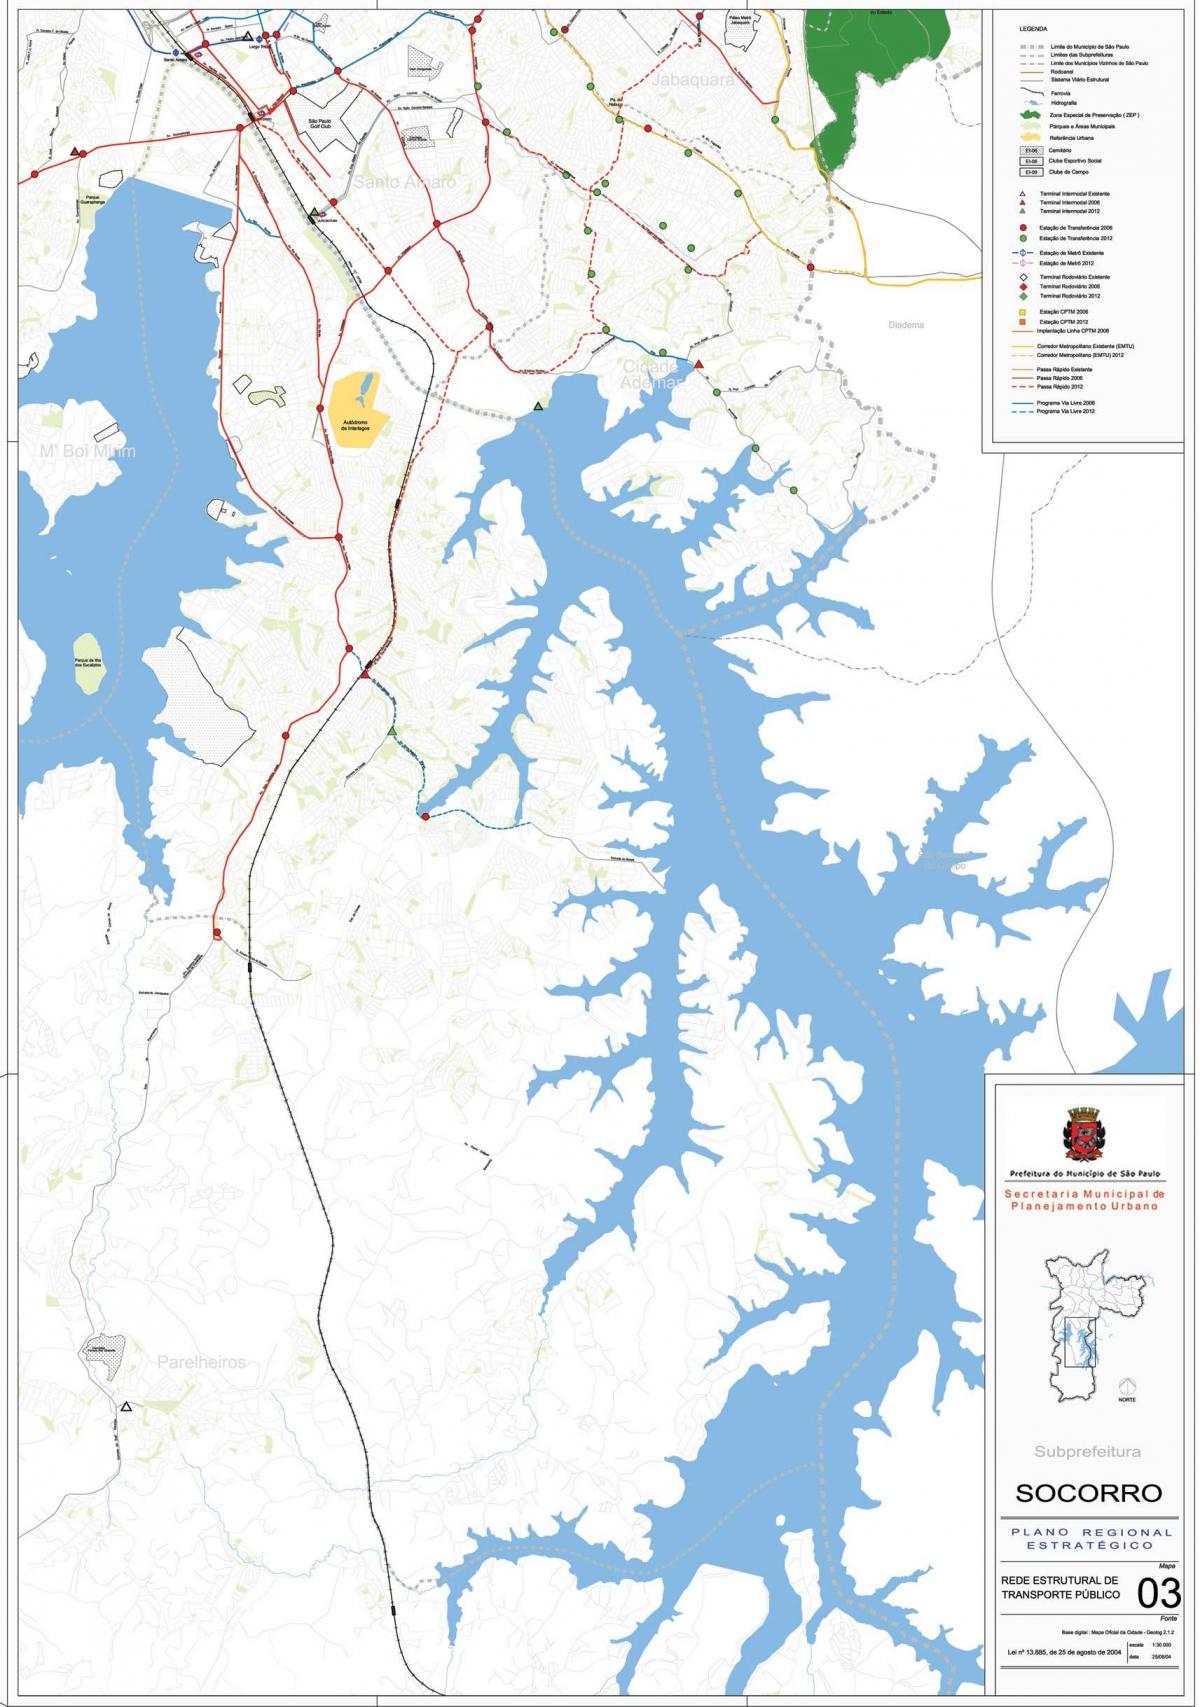 Map of Capela do Socorro São Paulo - Public transports